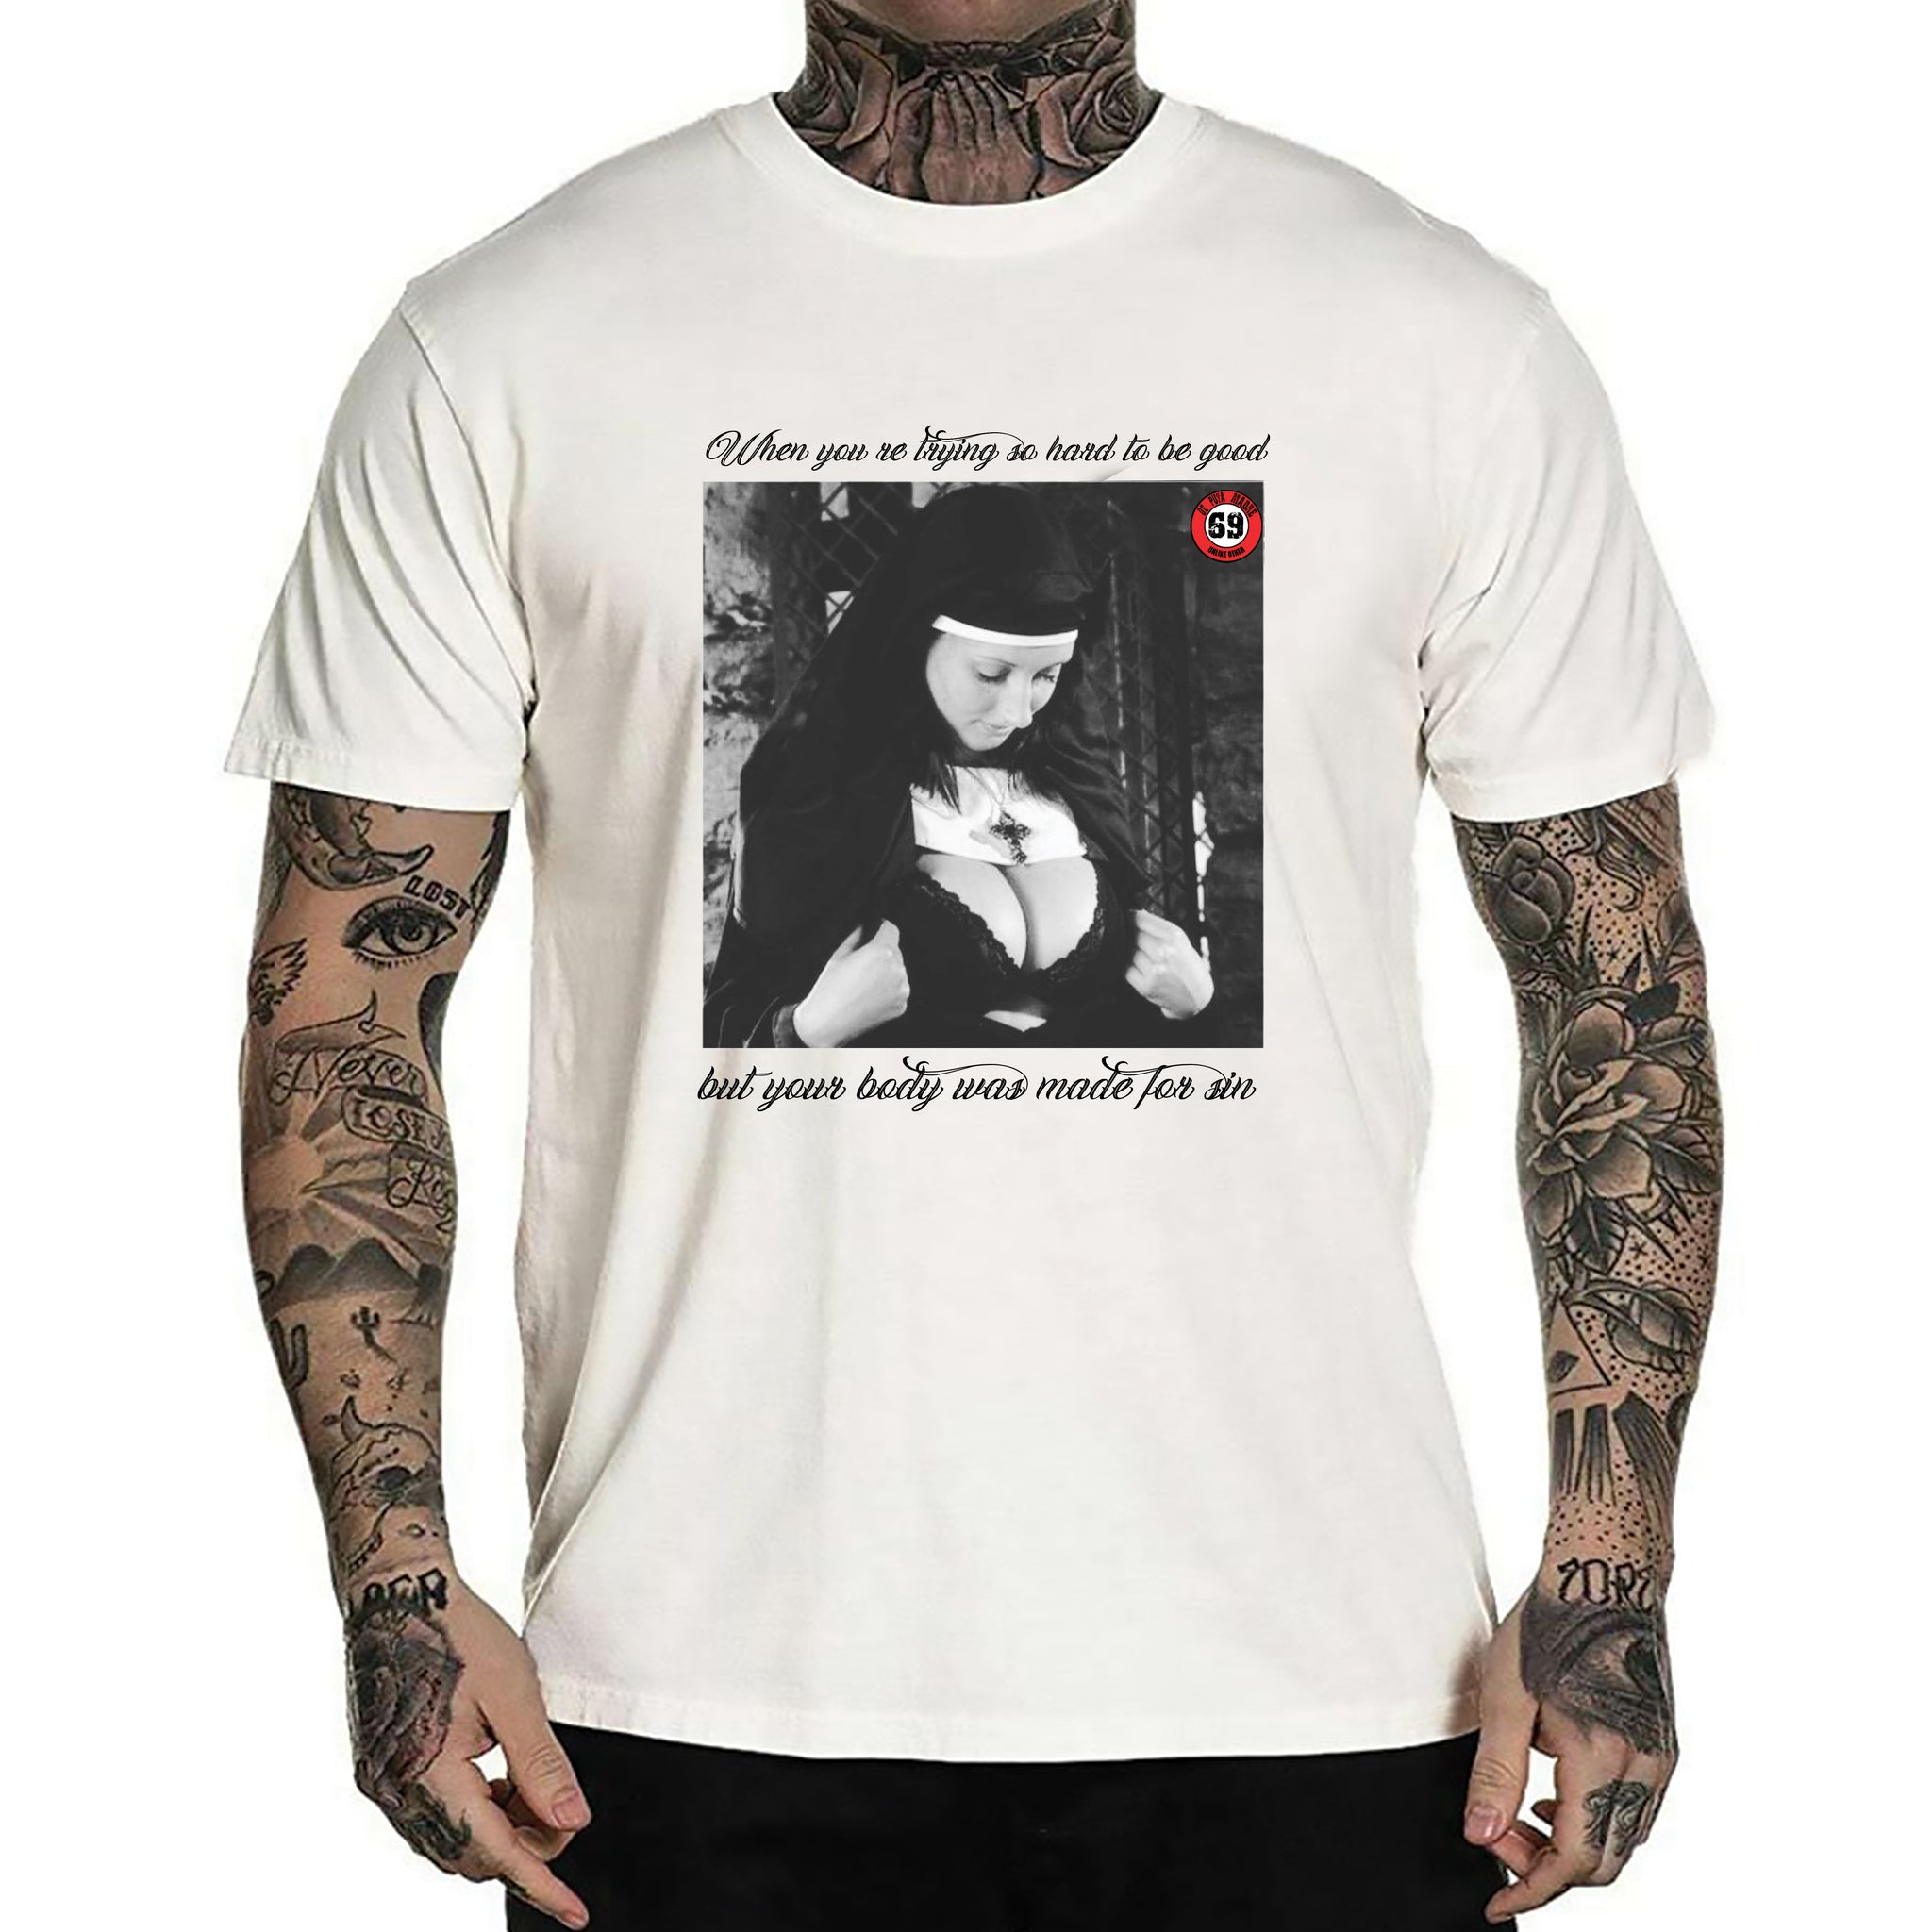 DPM69 T-shirt da uomo Design fatto a mano Made for sin